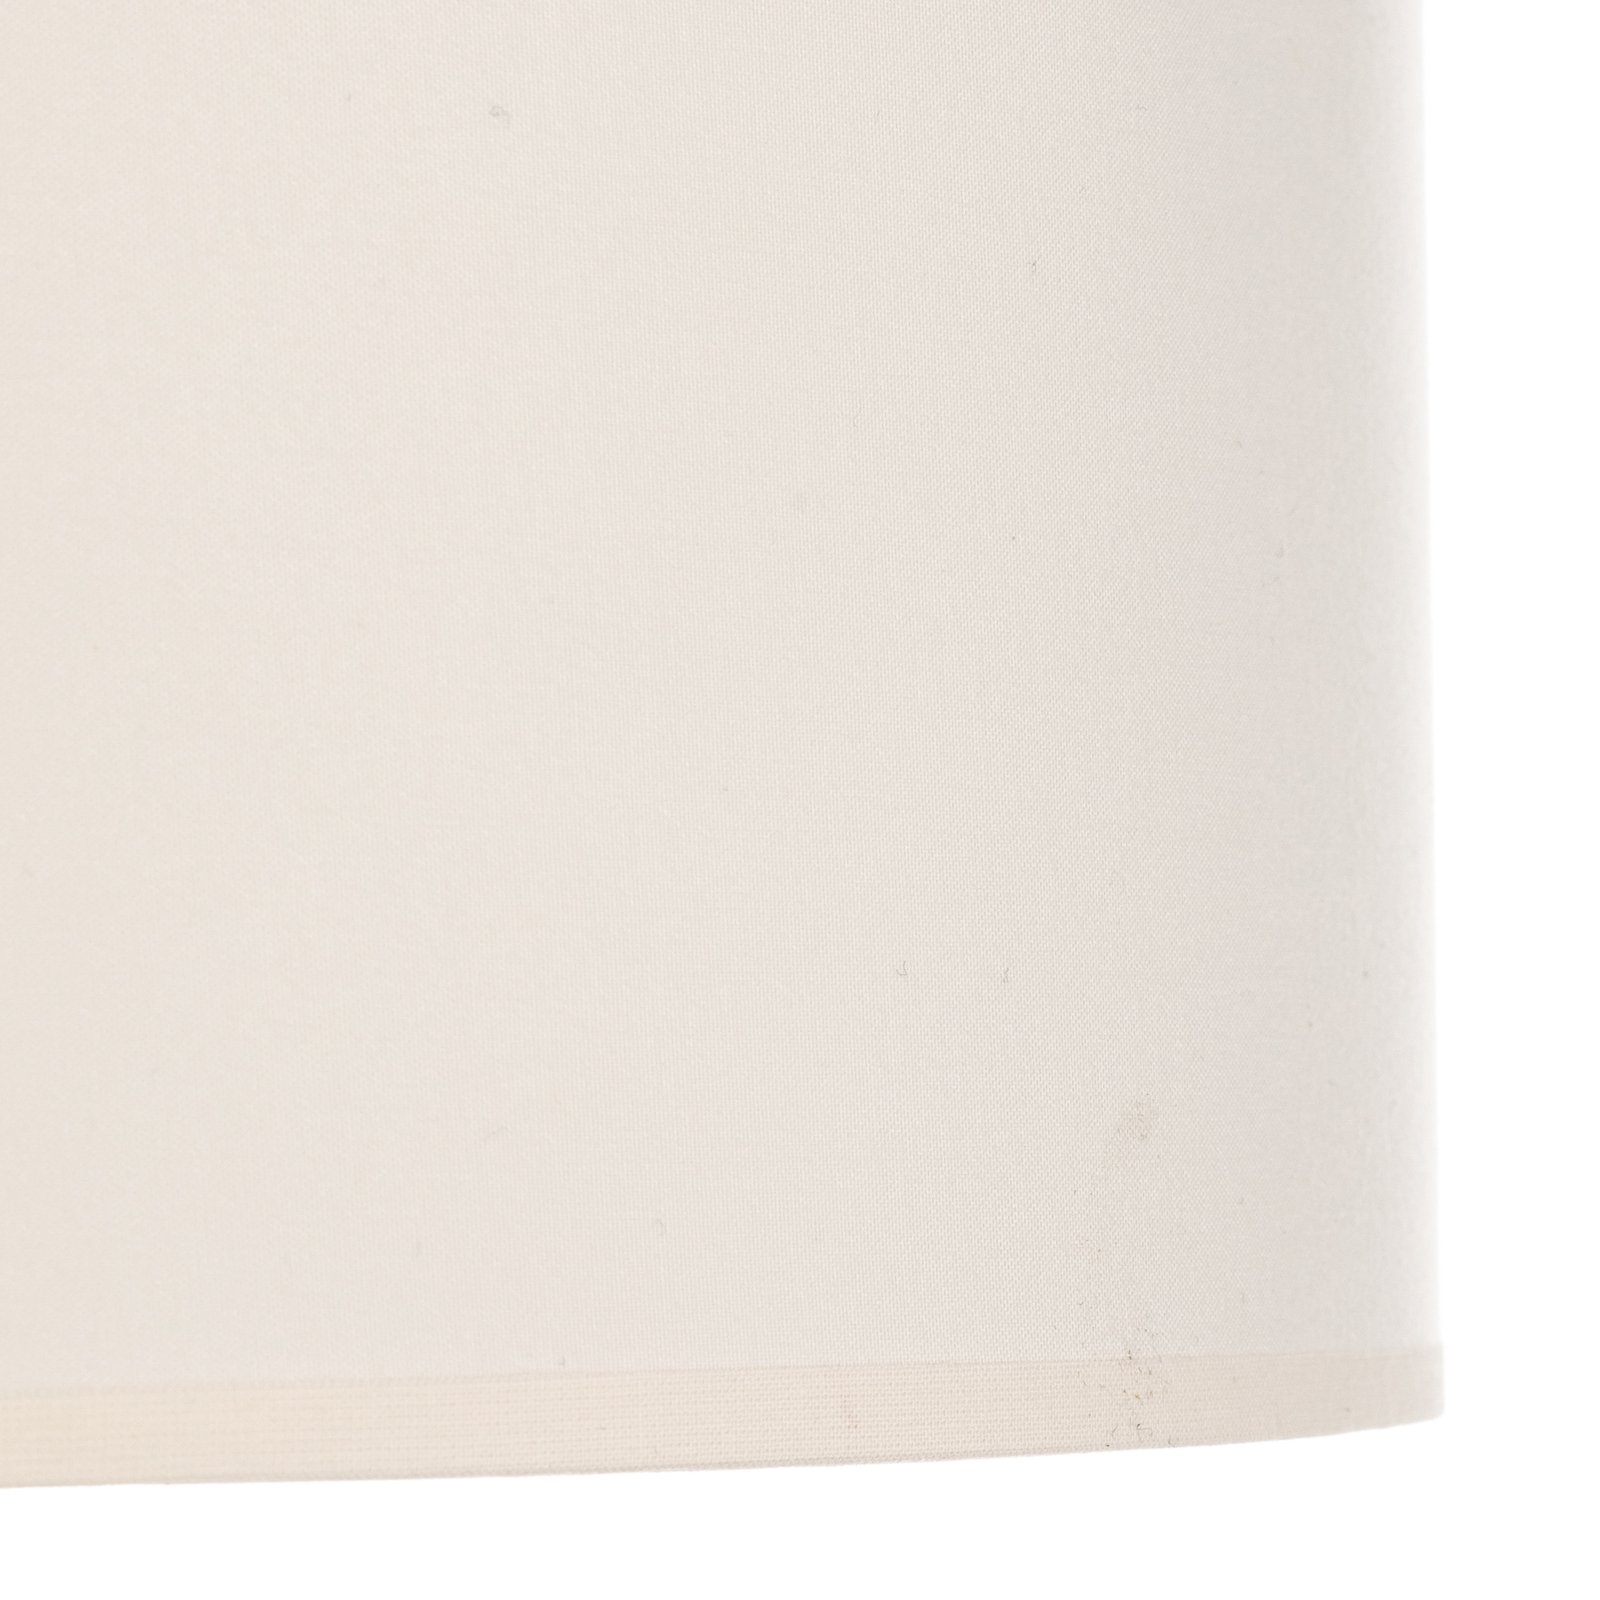 Euluna Roller couverture, abat-jour en tissu écru, Ø 40 cm